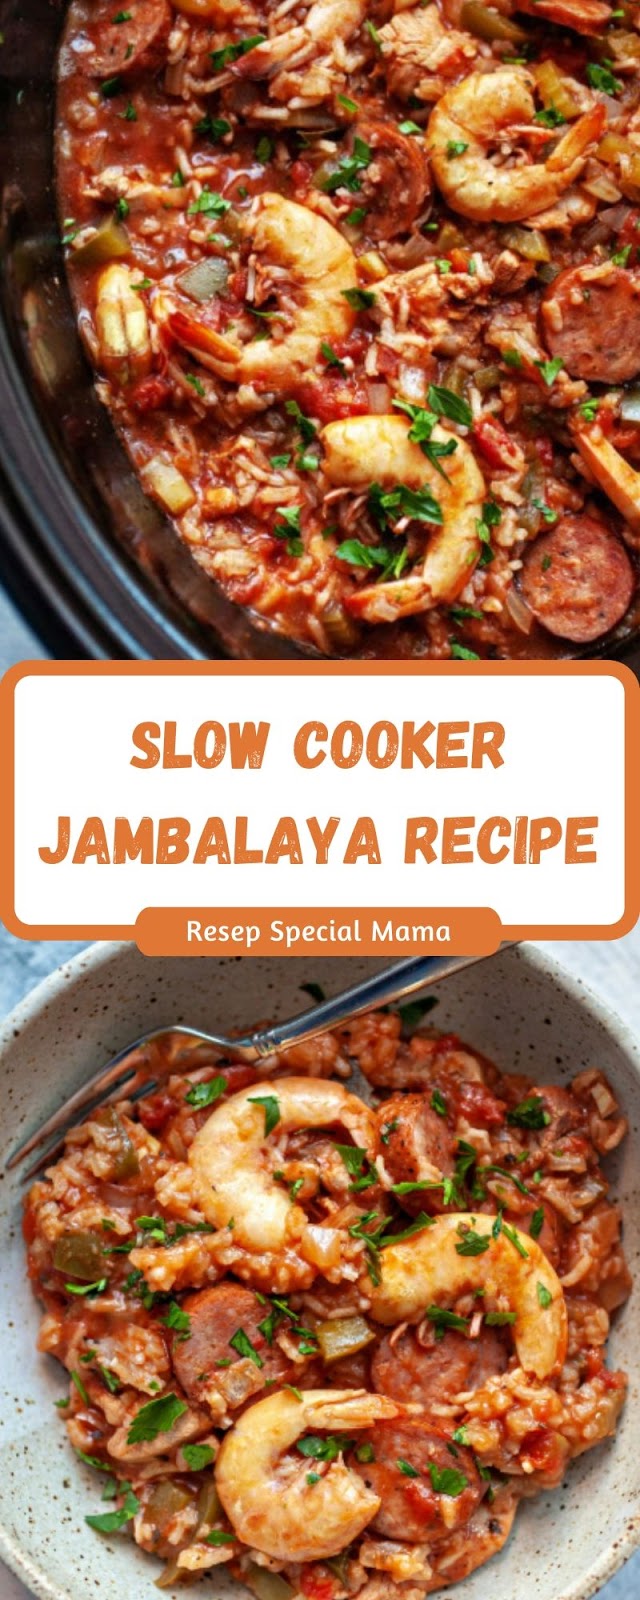 SLOW COOKER JAMBALAYA RECIPE - Resep Special Mama